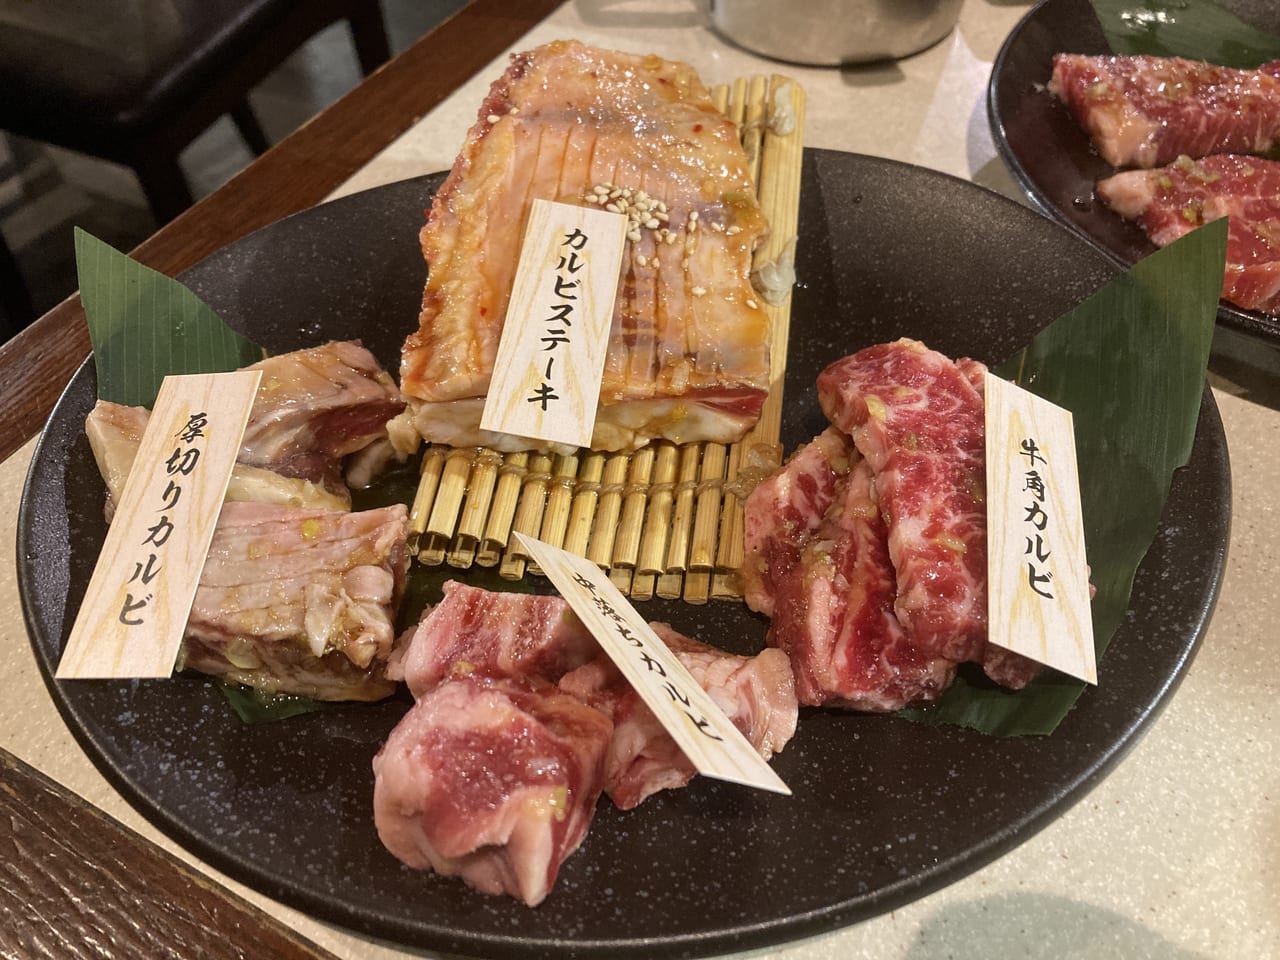 鳥取市 湖山の焼肉屋 牛角 の人気メニュー 4種盛りを食べてみました 号外net 鳥取市 東部地域